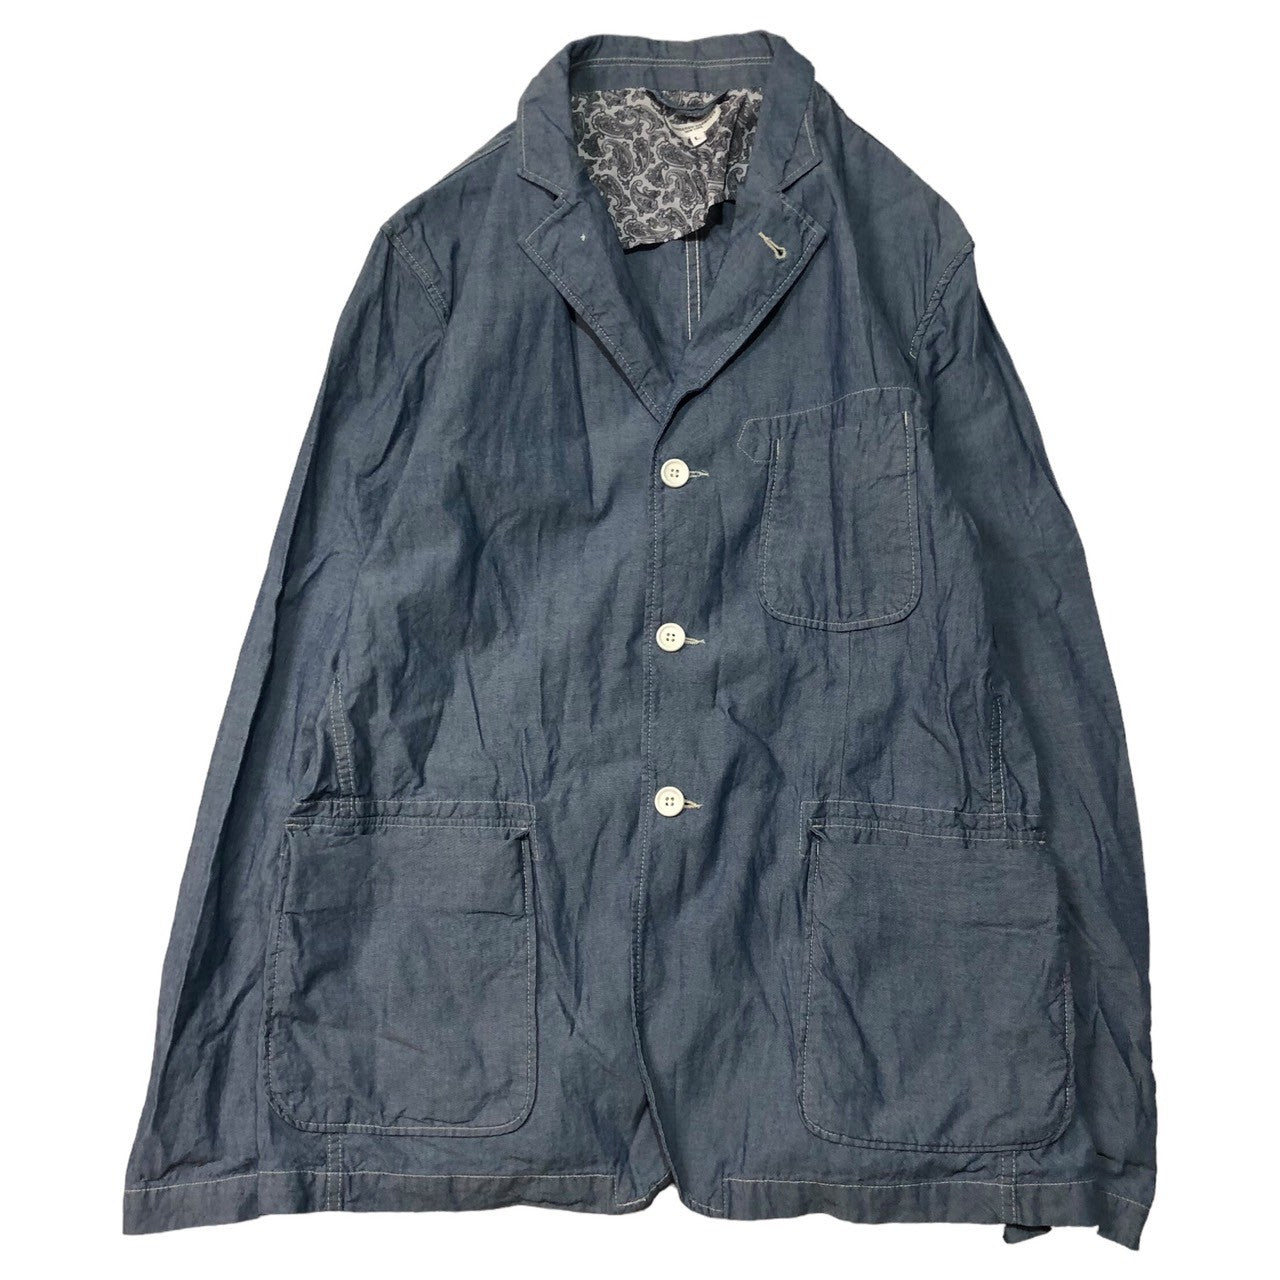 Engineered Garments(エンジニアードガーメンツ) chambray jacket シャンブレー テーラード ジャケット SIZE L ライトインディゴ